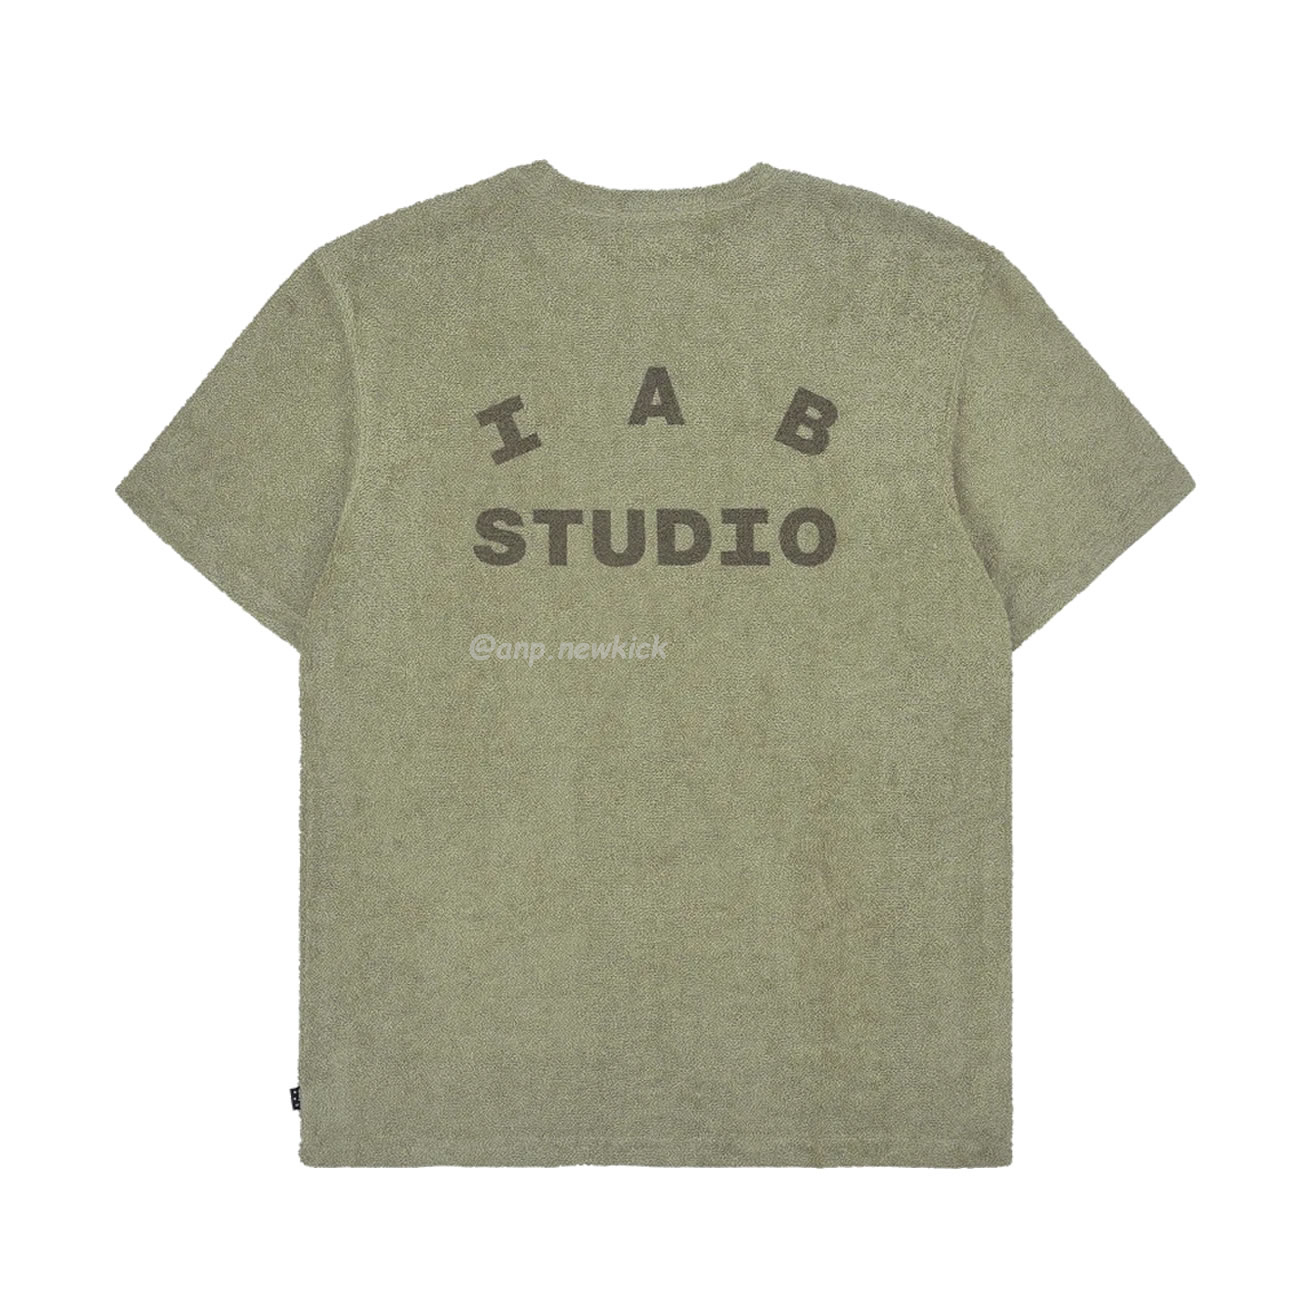 Iab Studio Towel T Shirt Light Green (2) - newkick.org